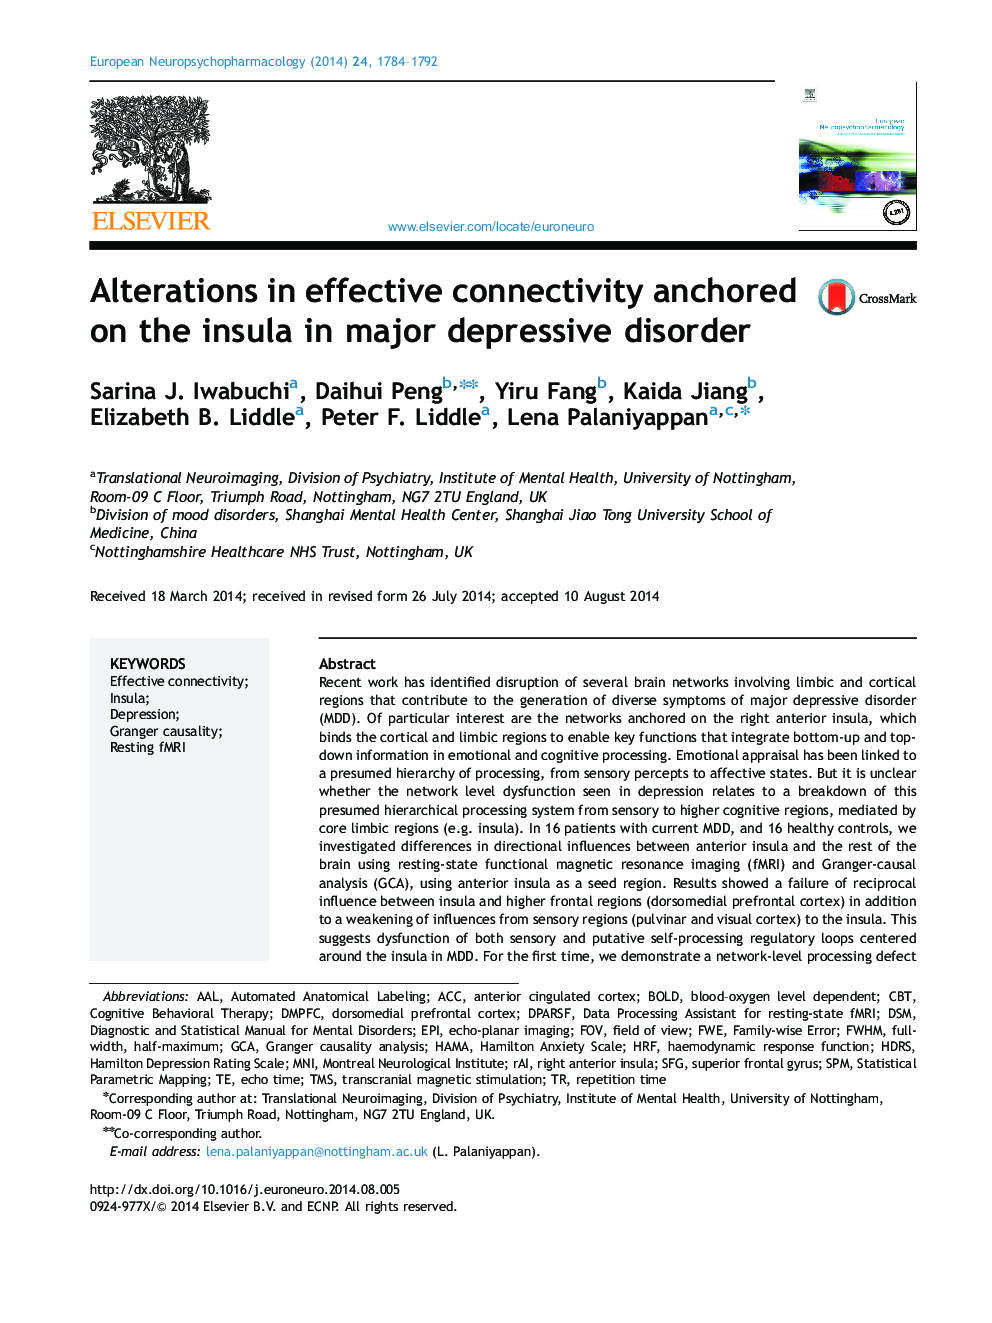 تغییرات در اتصال موثر بر روی انسولین در اختلال افسردگی عمده متوقف شد 